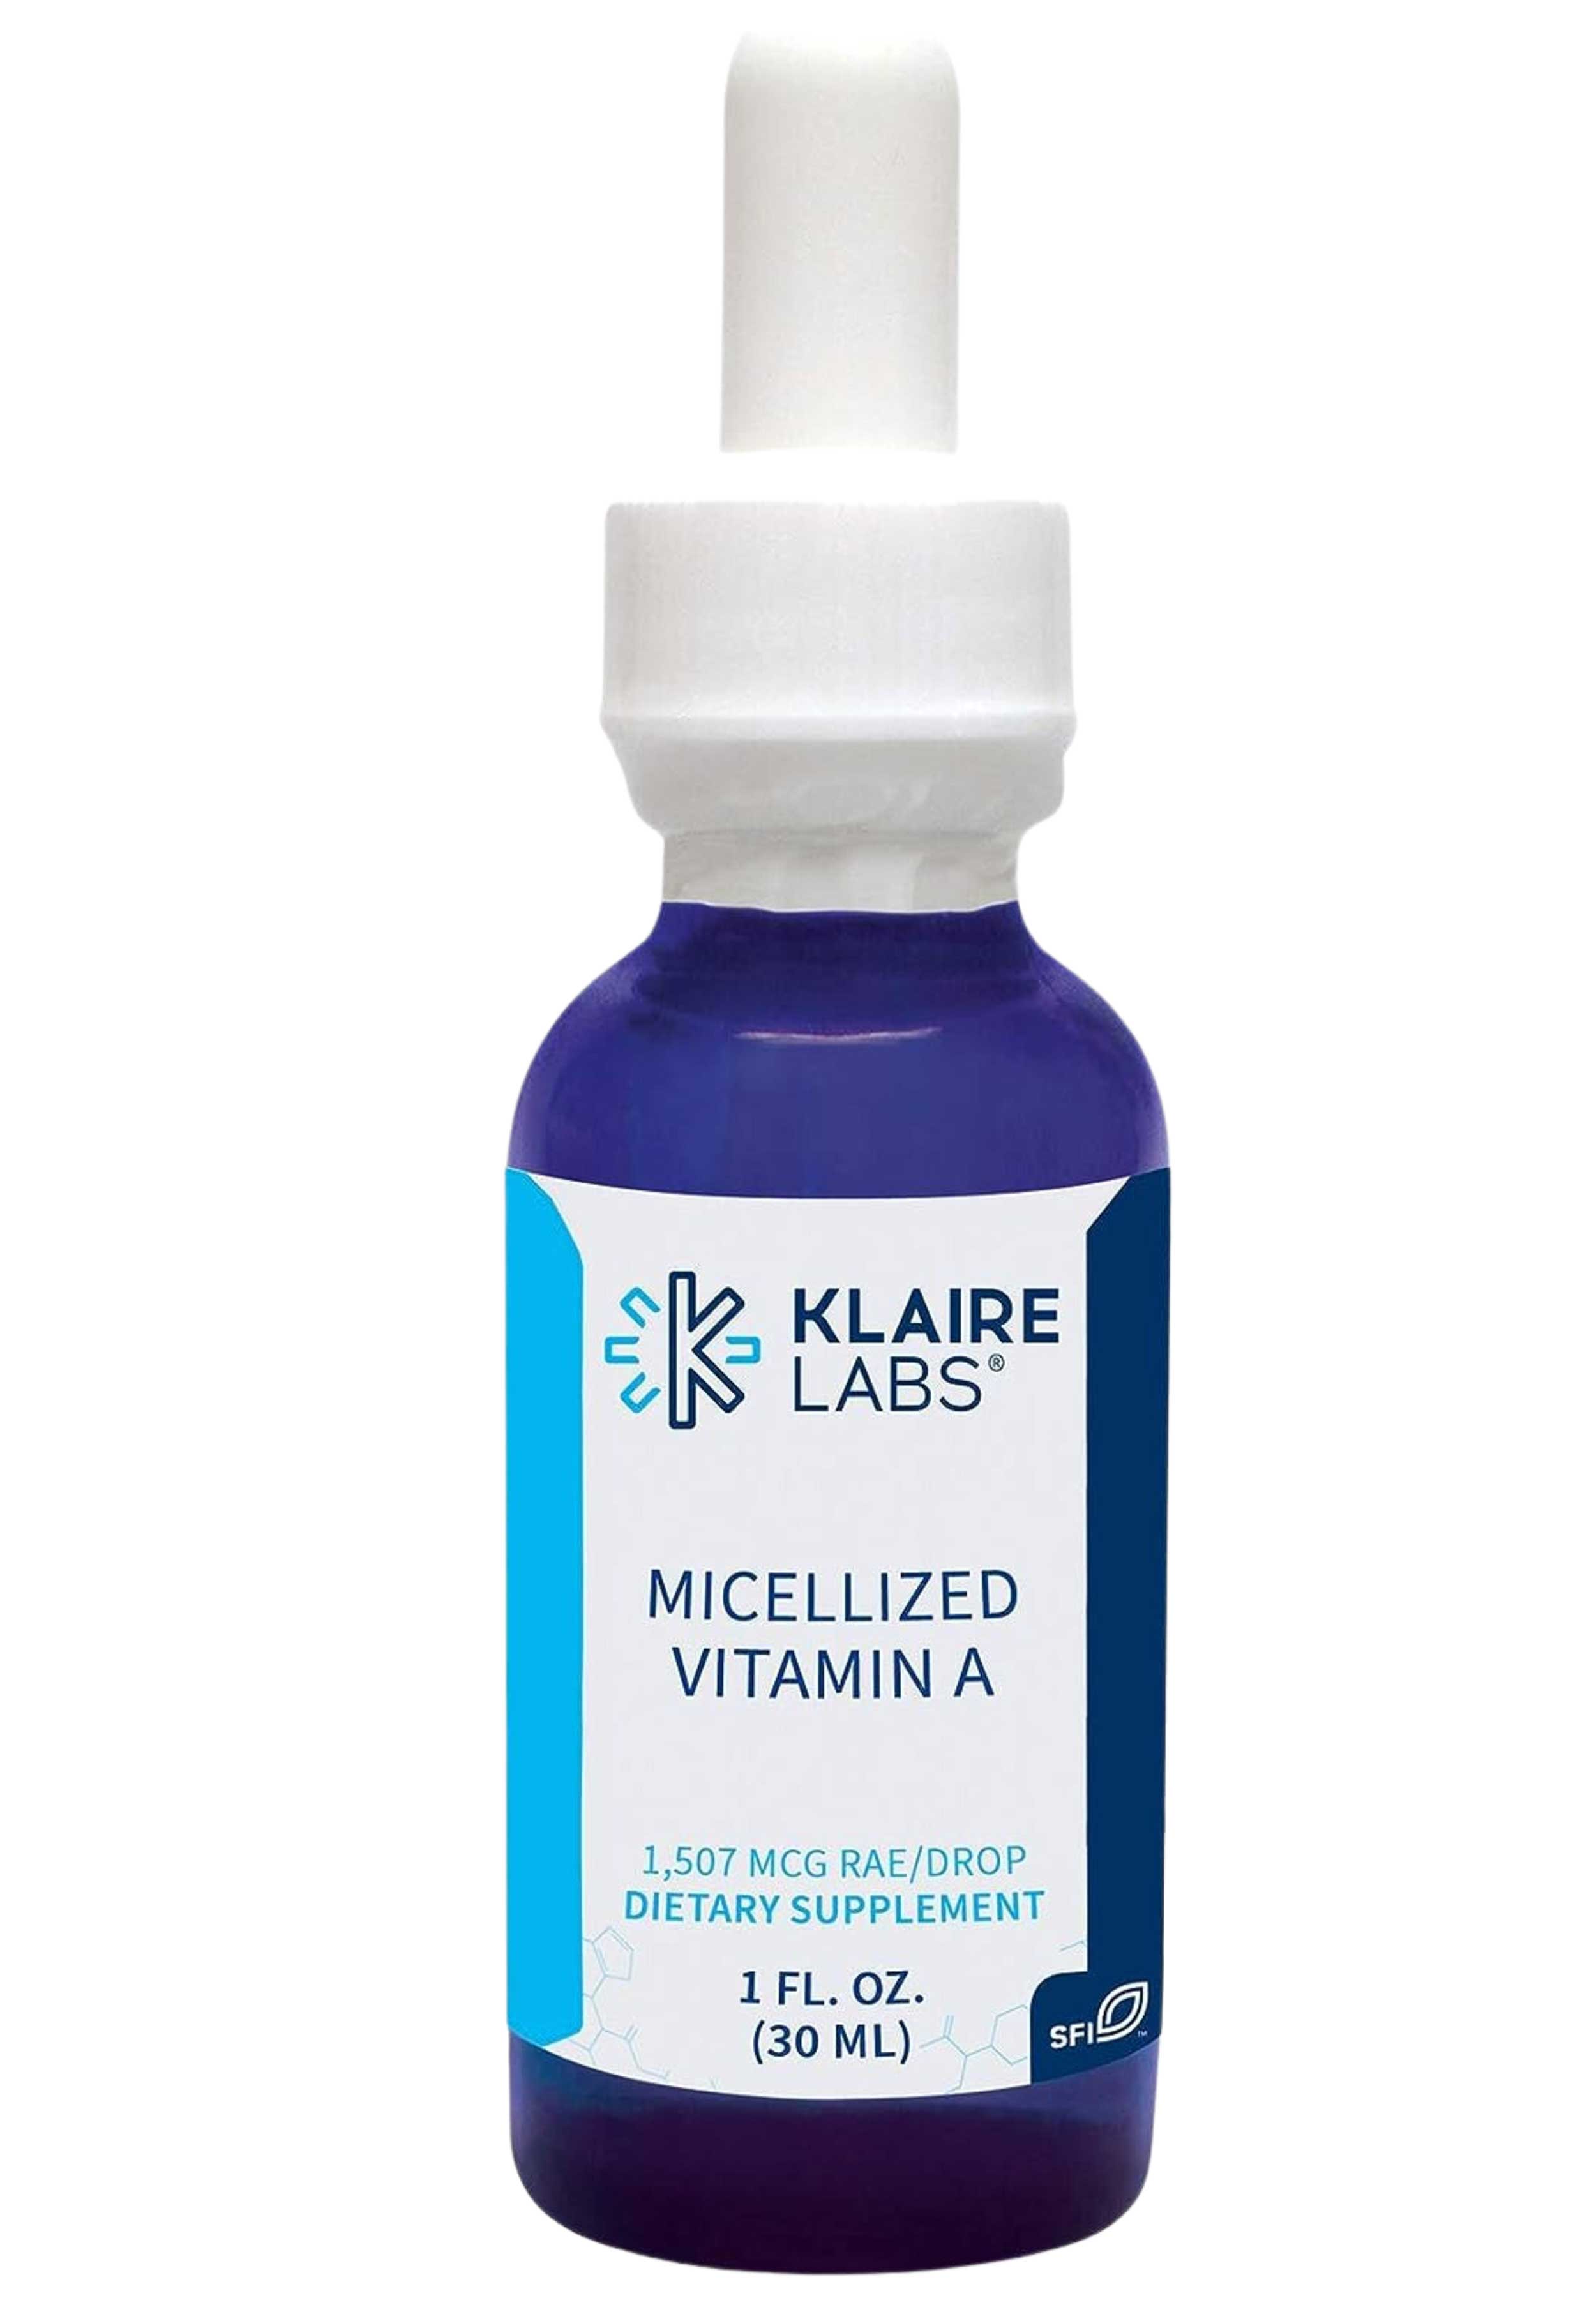 Klaire Labs Micellized Vitamin A Liquid